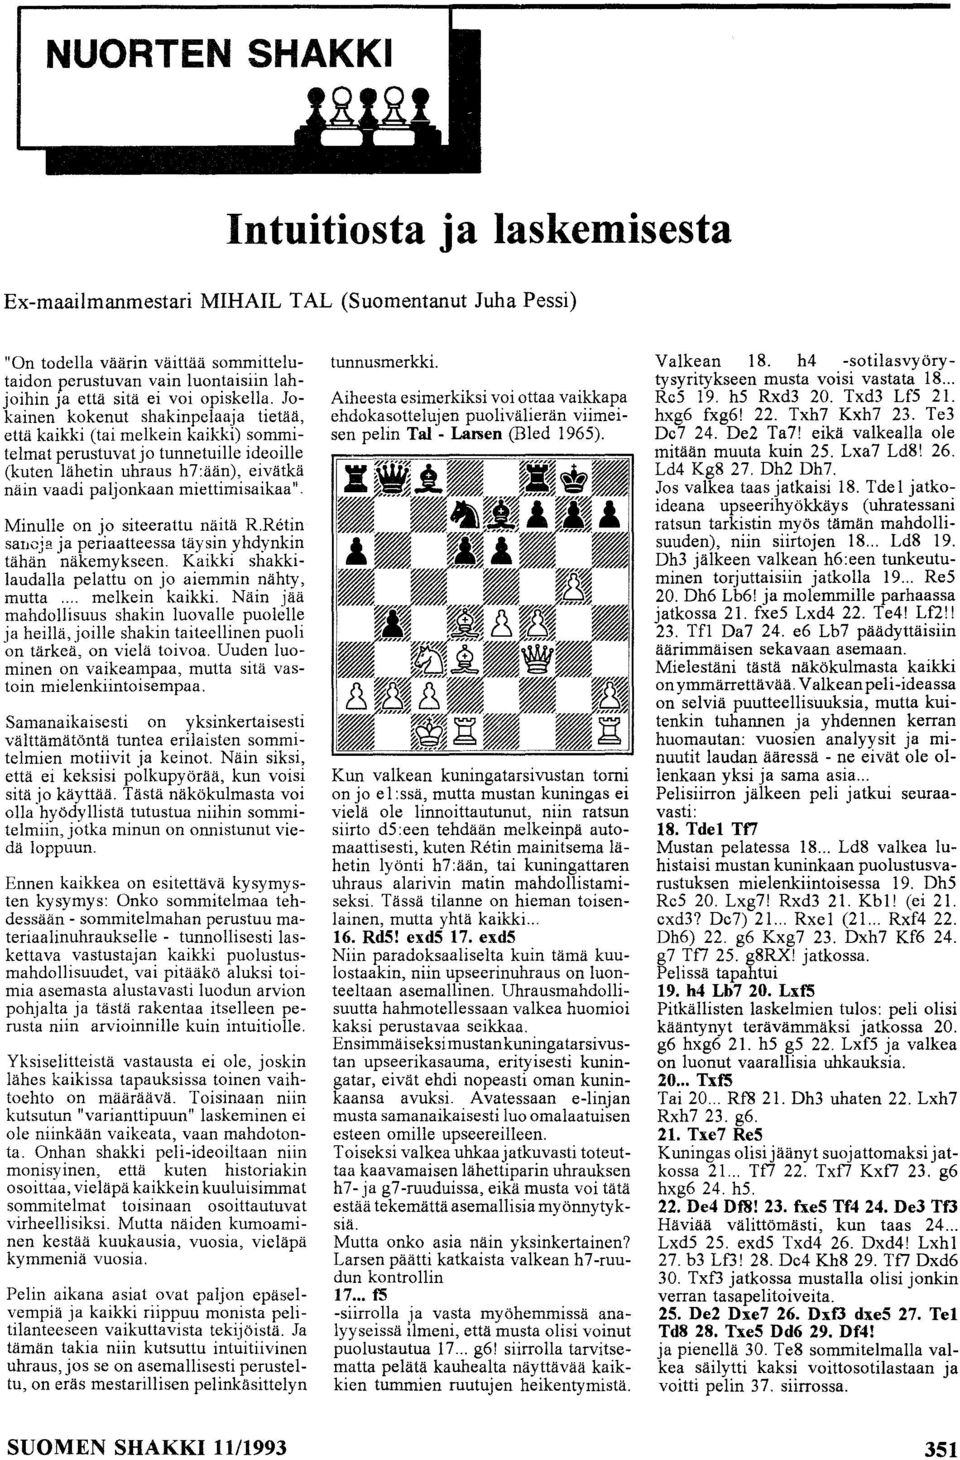 Jokainen kokenut shakinpelaaja tietää, että kaikki (tai melkein kaikki) sommitelmat perustuvat jo tunnetuille ideoille (kuten lähetin uhraus h7:ään), eivätkä näin vaadi paljonkaan miettimisaikaa".